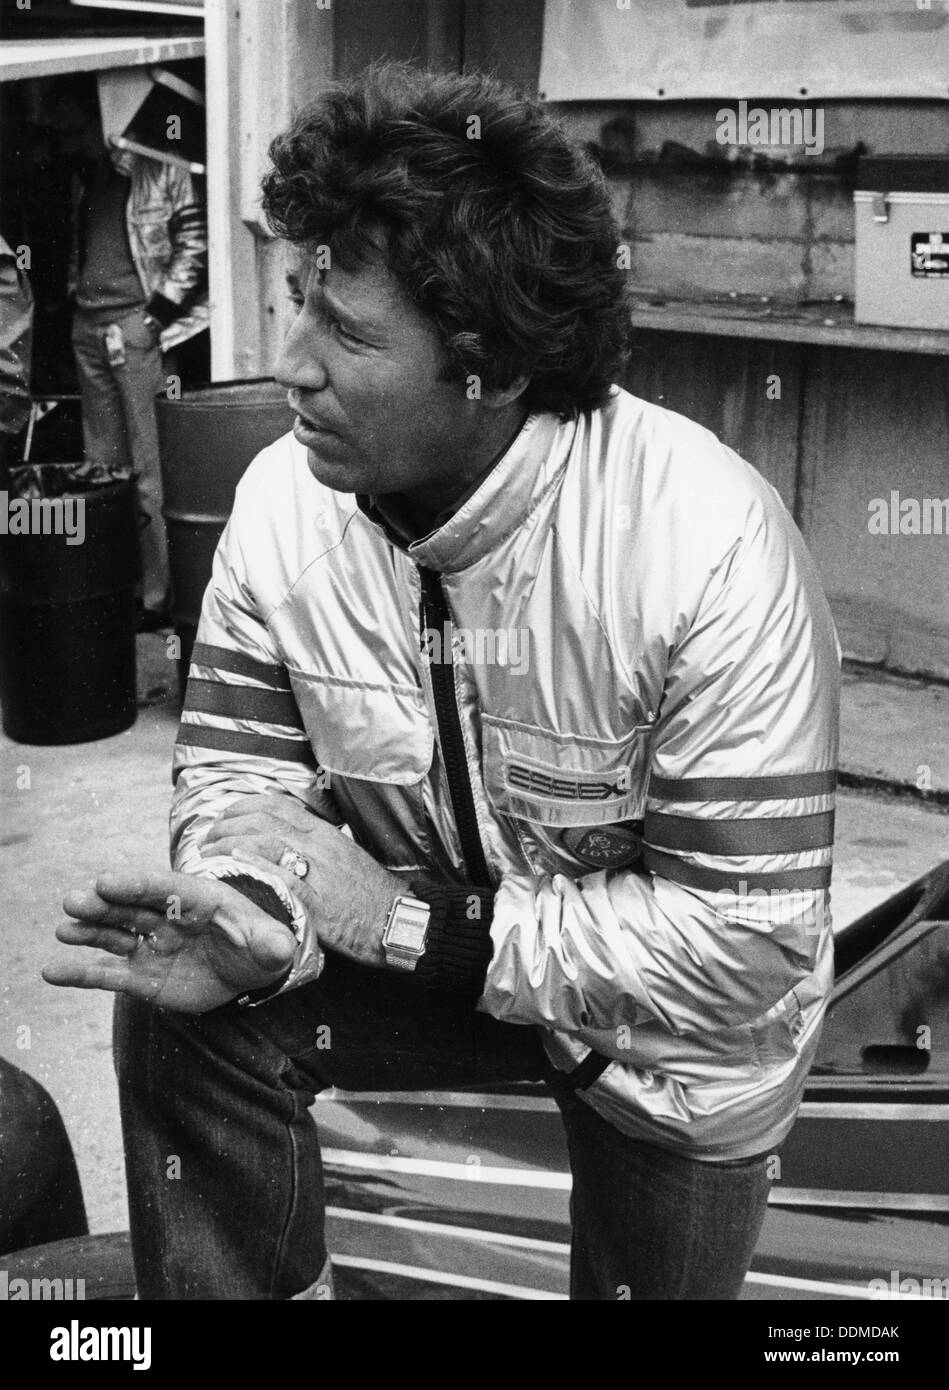 Mario Andretti, 1980. Artist: Unknown Stock Photo